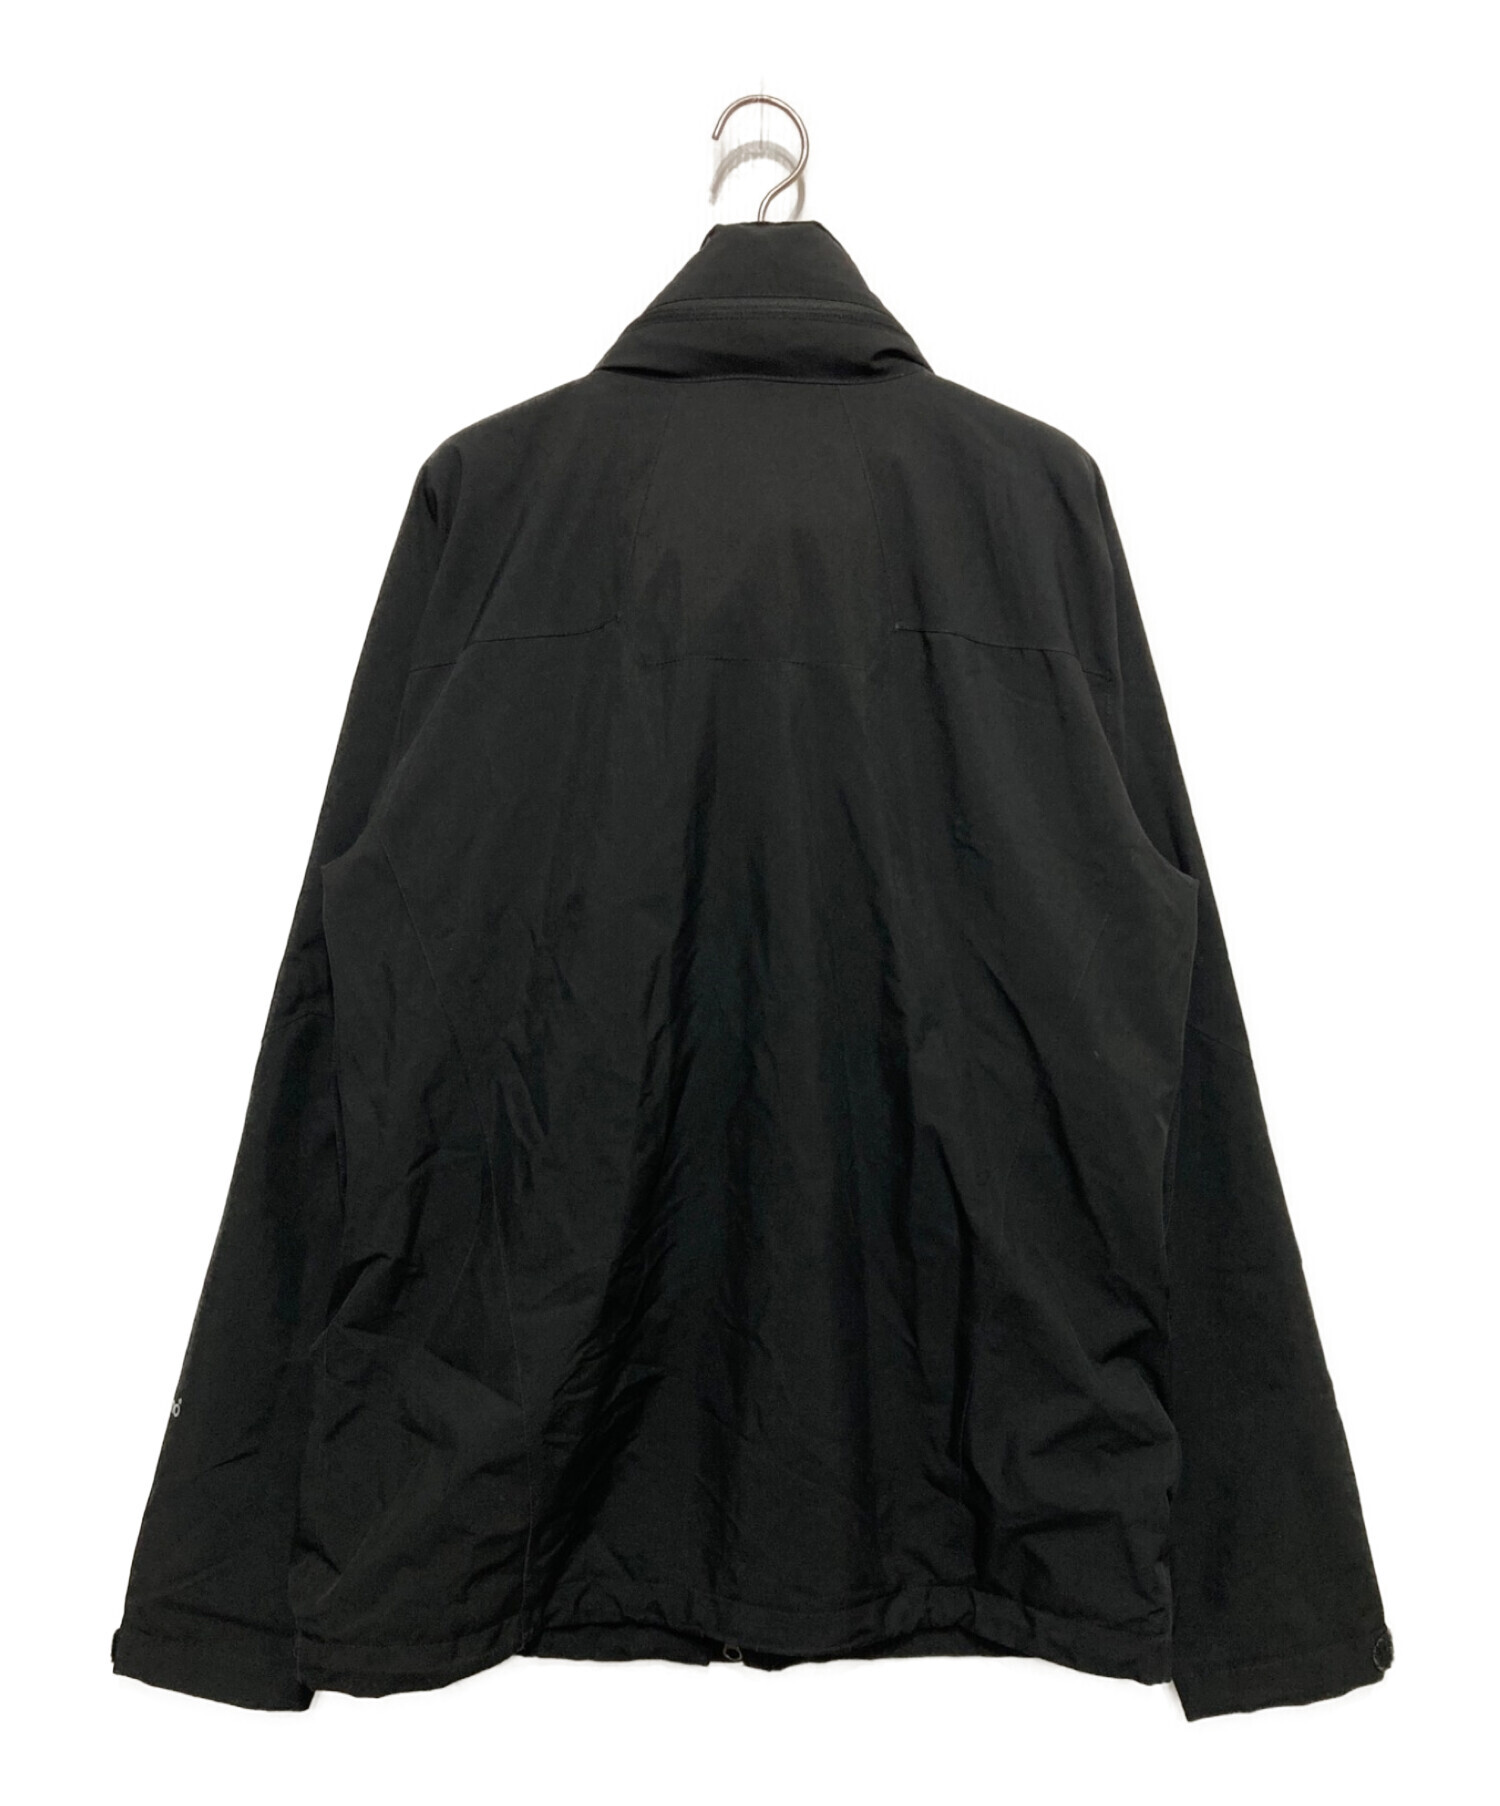 Patagonia (パタゴニア) ストームライトジャケット ブラック サイズ:Ⅿ